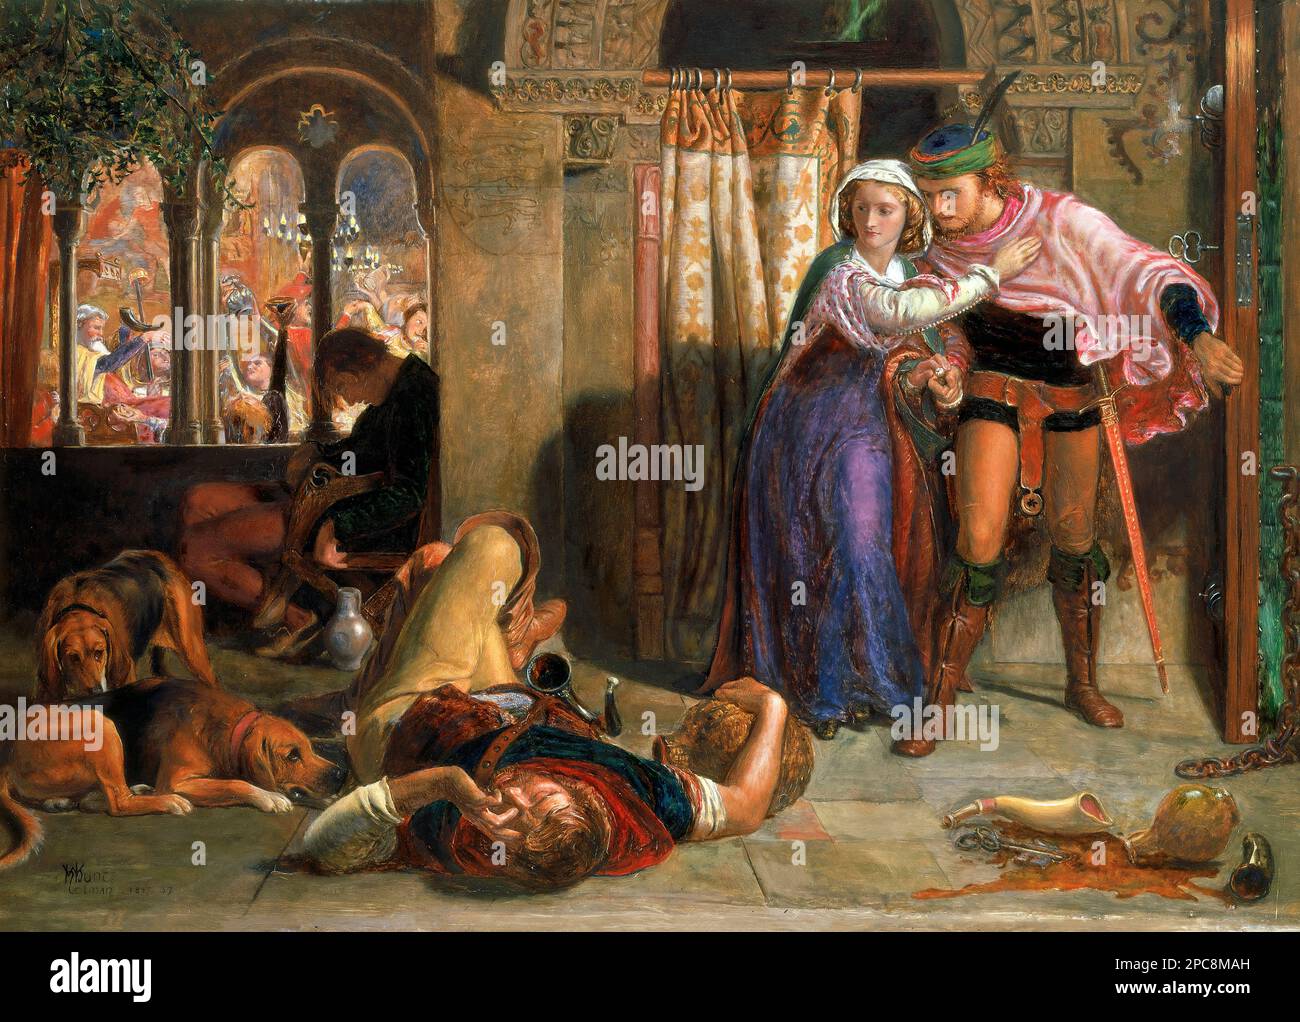 Der Flug von Madeline und Porphyro während der Trunkenheit, die an der Feier teilnahm (der Abend von St. Agnes)“ von William Holman Hunt (1827-1910), Öl auf Platte, c. 1847-57. Holman Hunt war eine führende Figur in der Pre-Raphaelite-Bewegung des 19. Jahrhunderts. Stockfoto